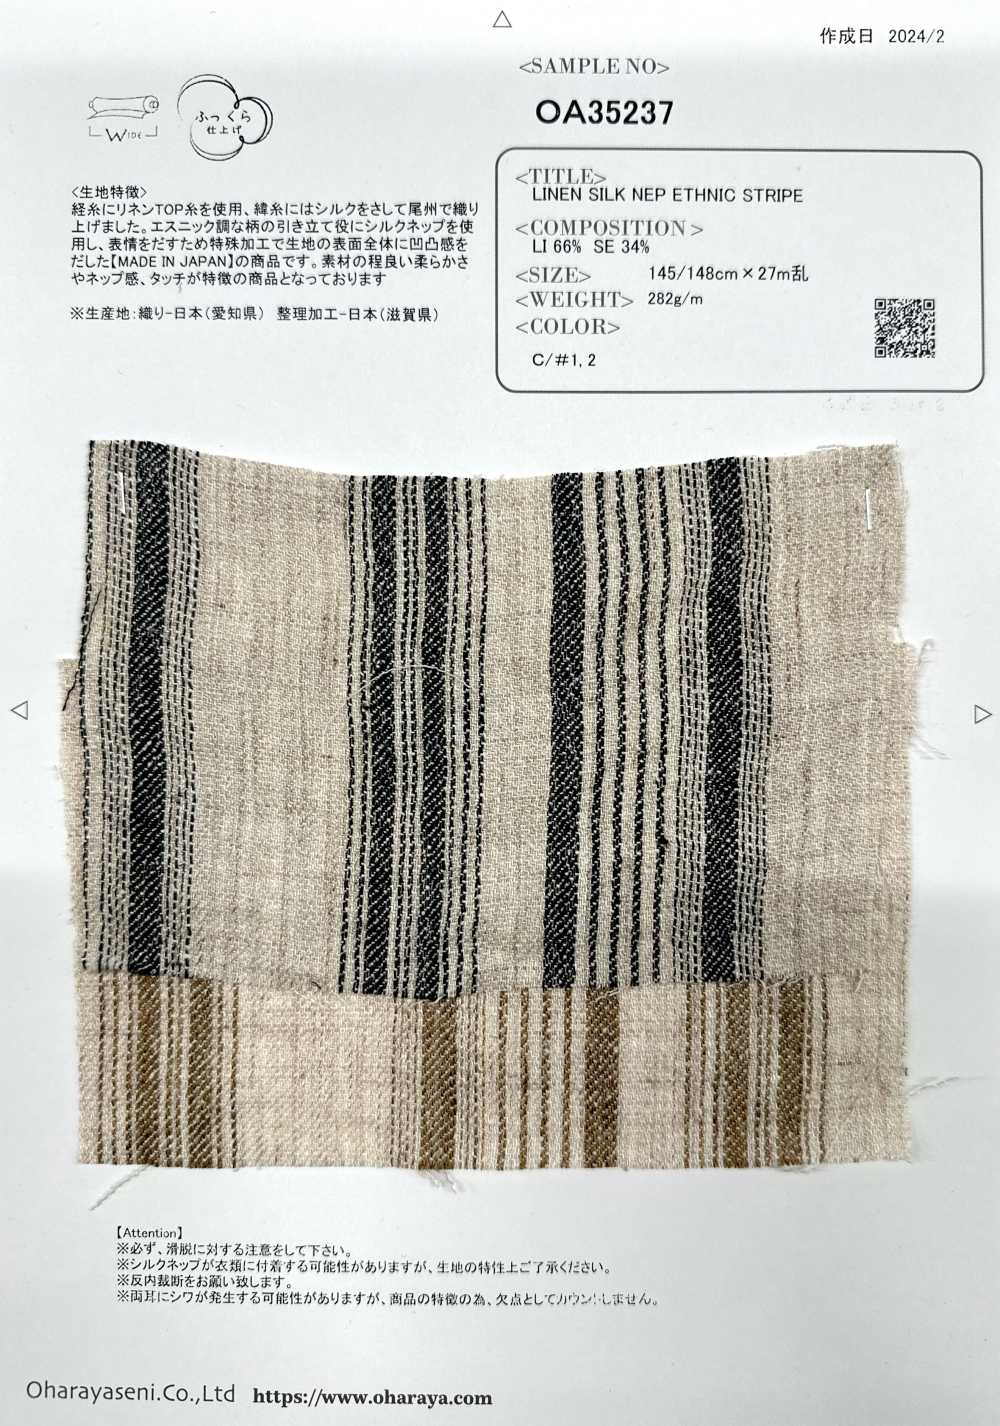 OA35237 Supima Cotton & French Linen × SILK 2/1 Super Twill Silky-Finish[生地] 小原屋繊維